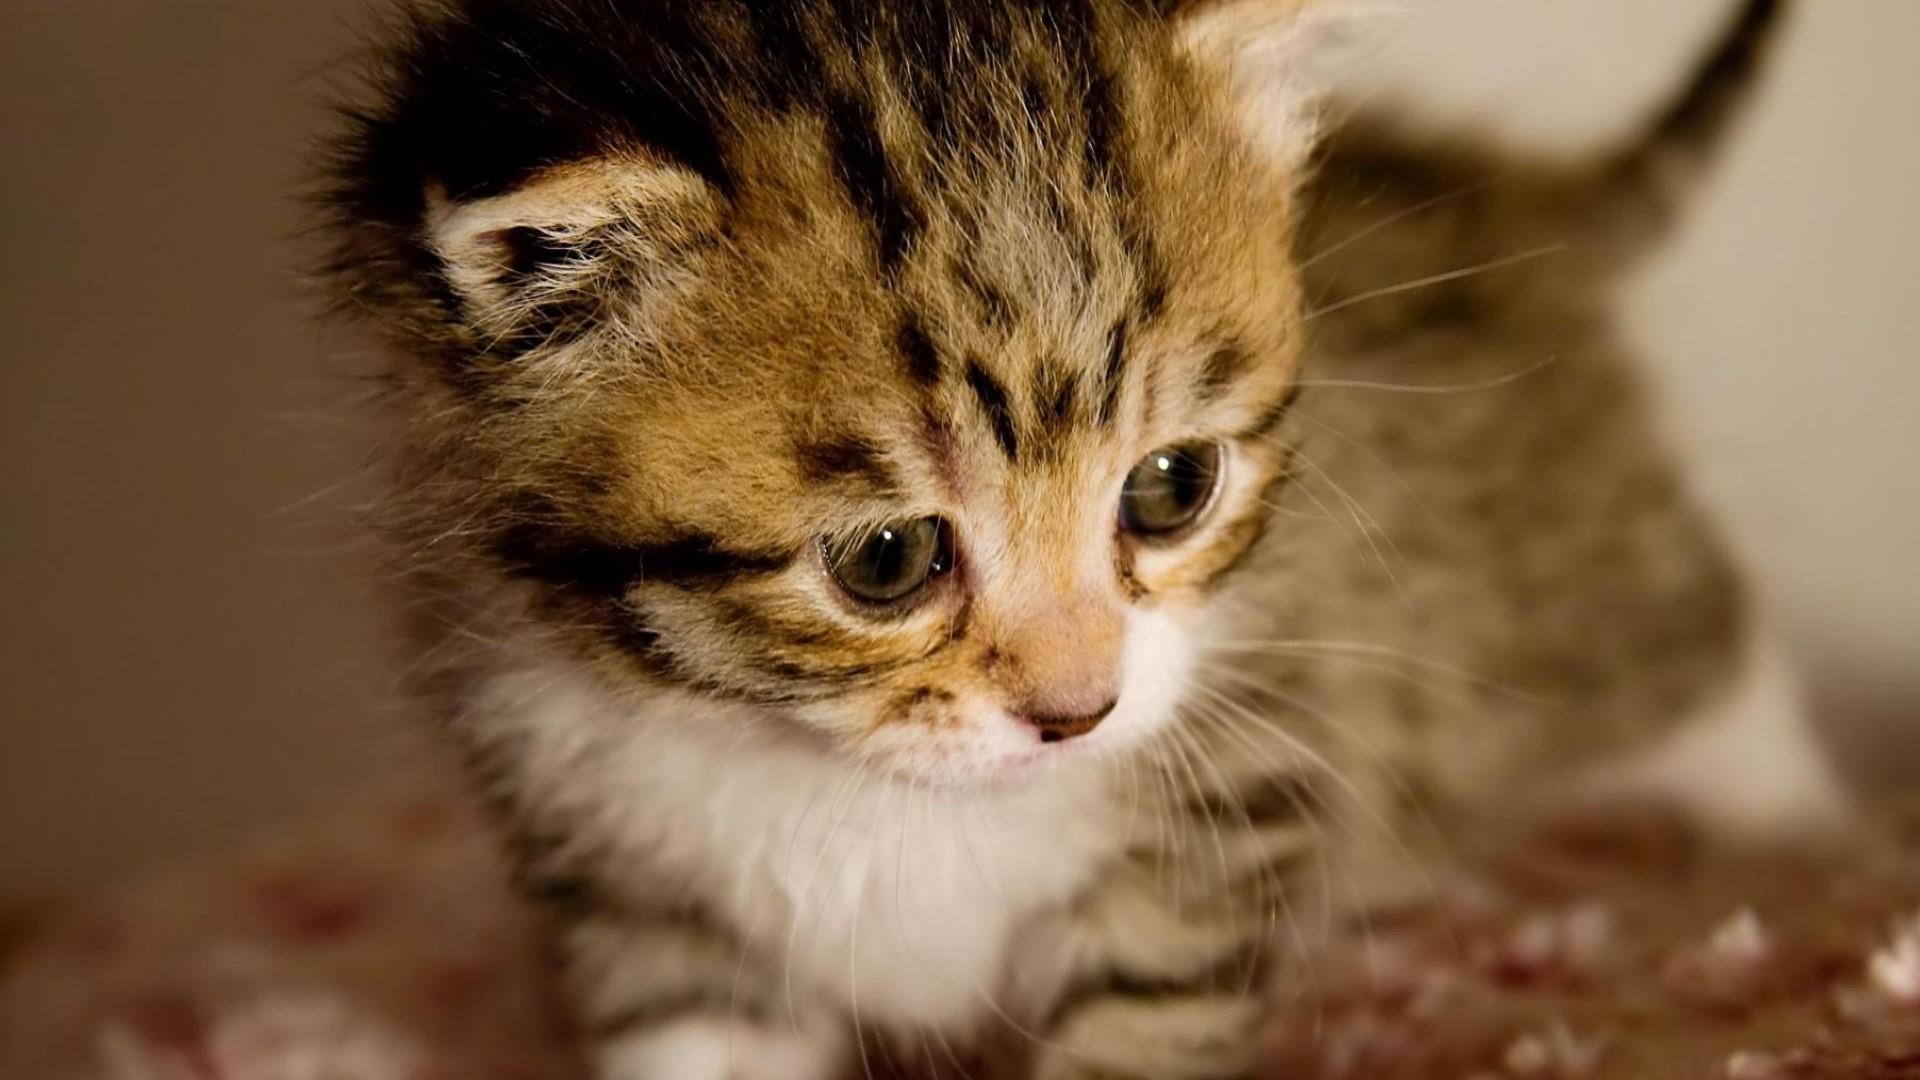 Cute baby kitten ð± wallpaper